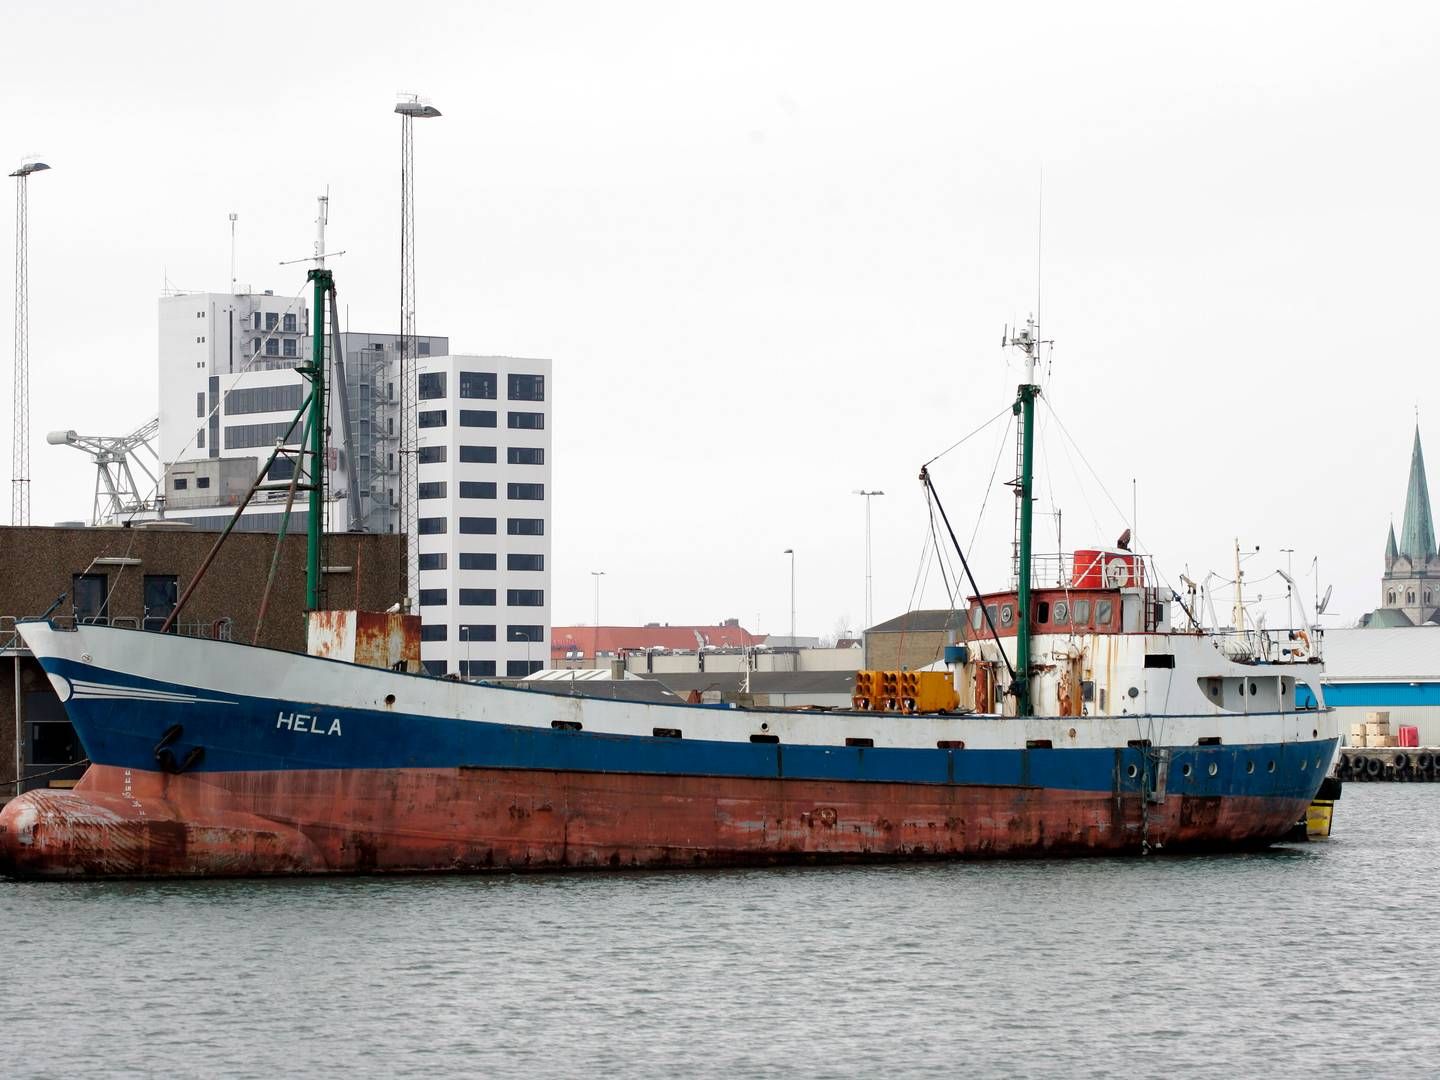 Det skal nu undersøges, hvad der er gået galt hos Frederikshavn Havn. (Arkivfoto af havnen). | Foto: Rasmus Baaner